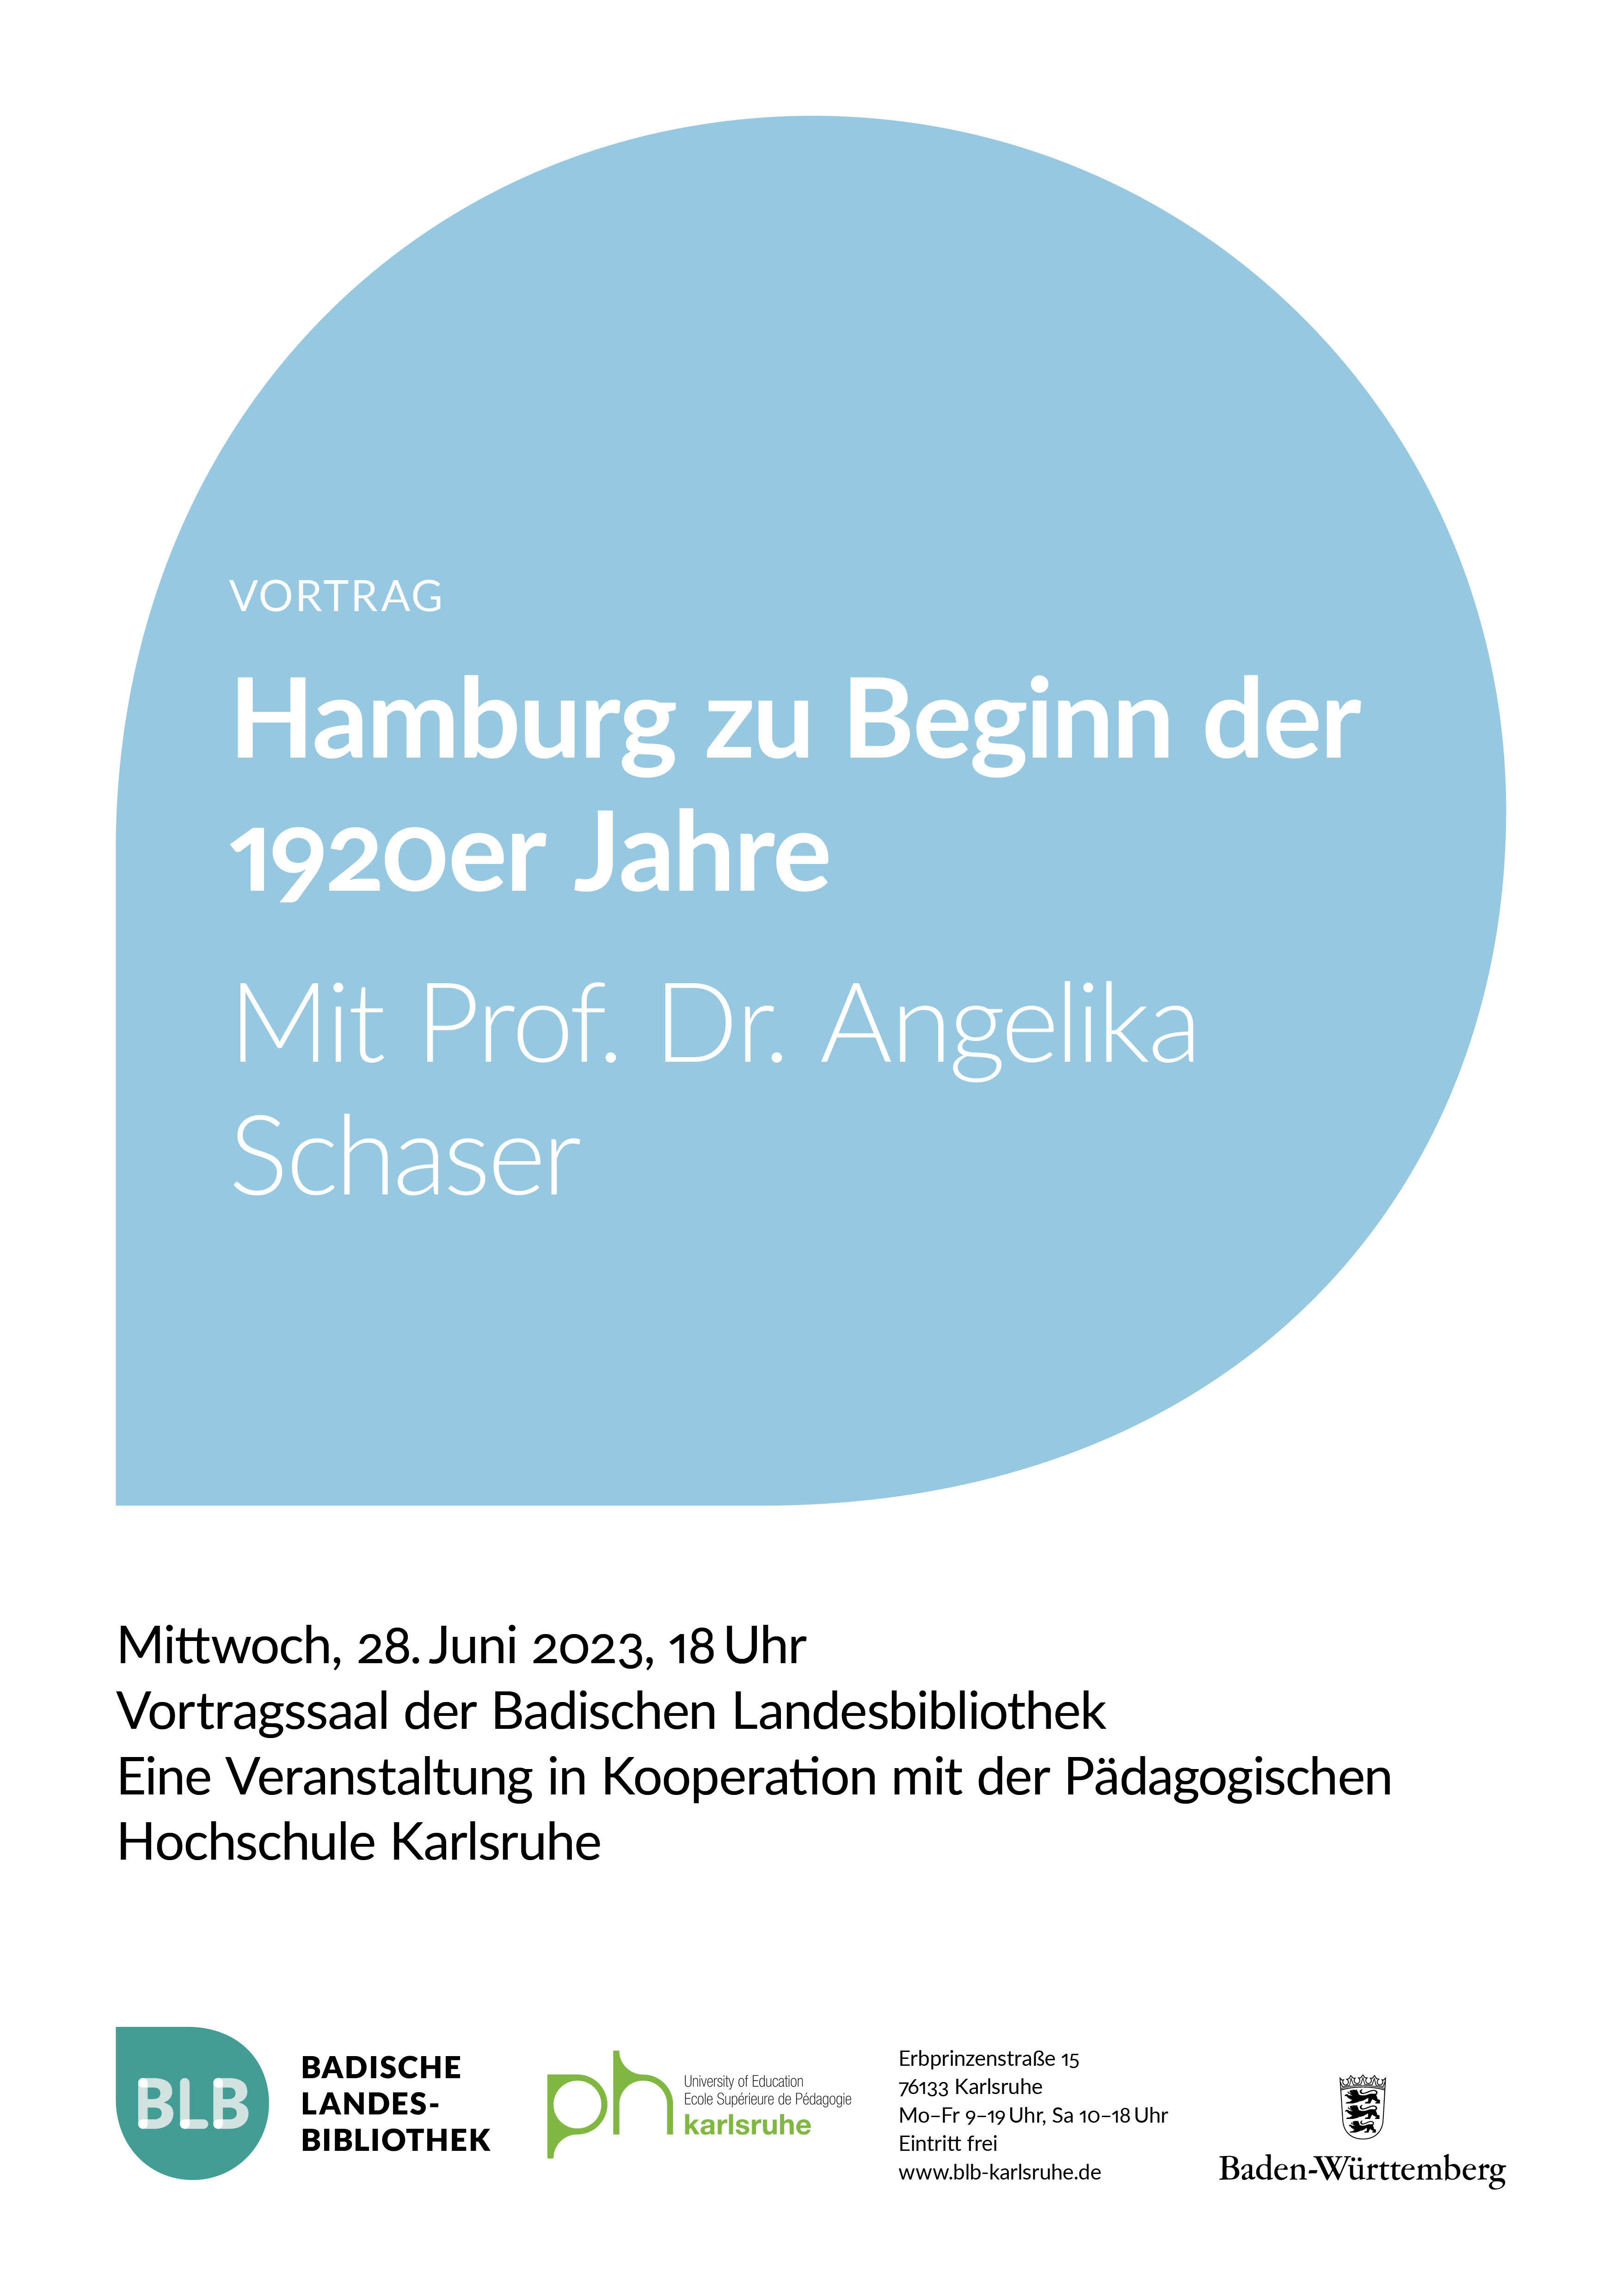 Zu sehen ist ein blaues Monogon mit der Aufschrift "Hamburg zu Beginn der 1920er Jahre". Der Vortrag mit Prof. Dr. Angelika Schaser findet am Mittwoch, dem 28. Juni 2023 um 18 Uhr statt. 